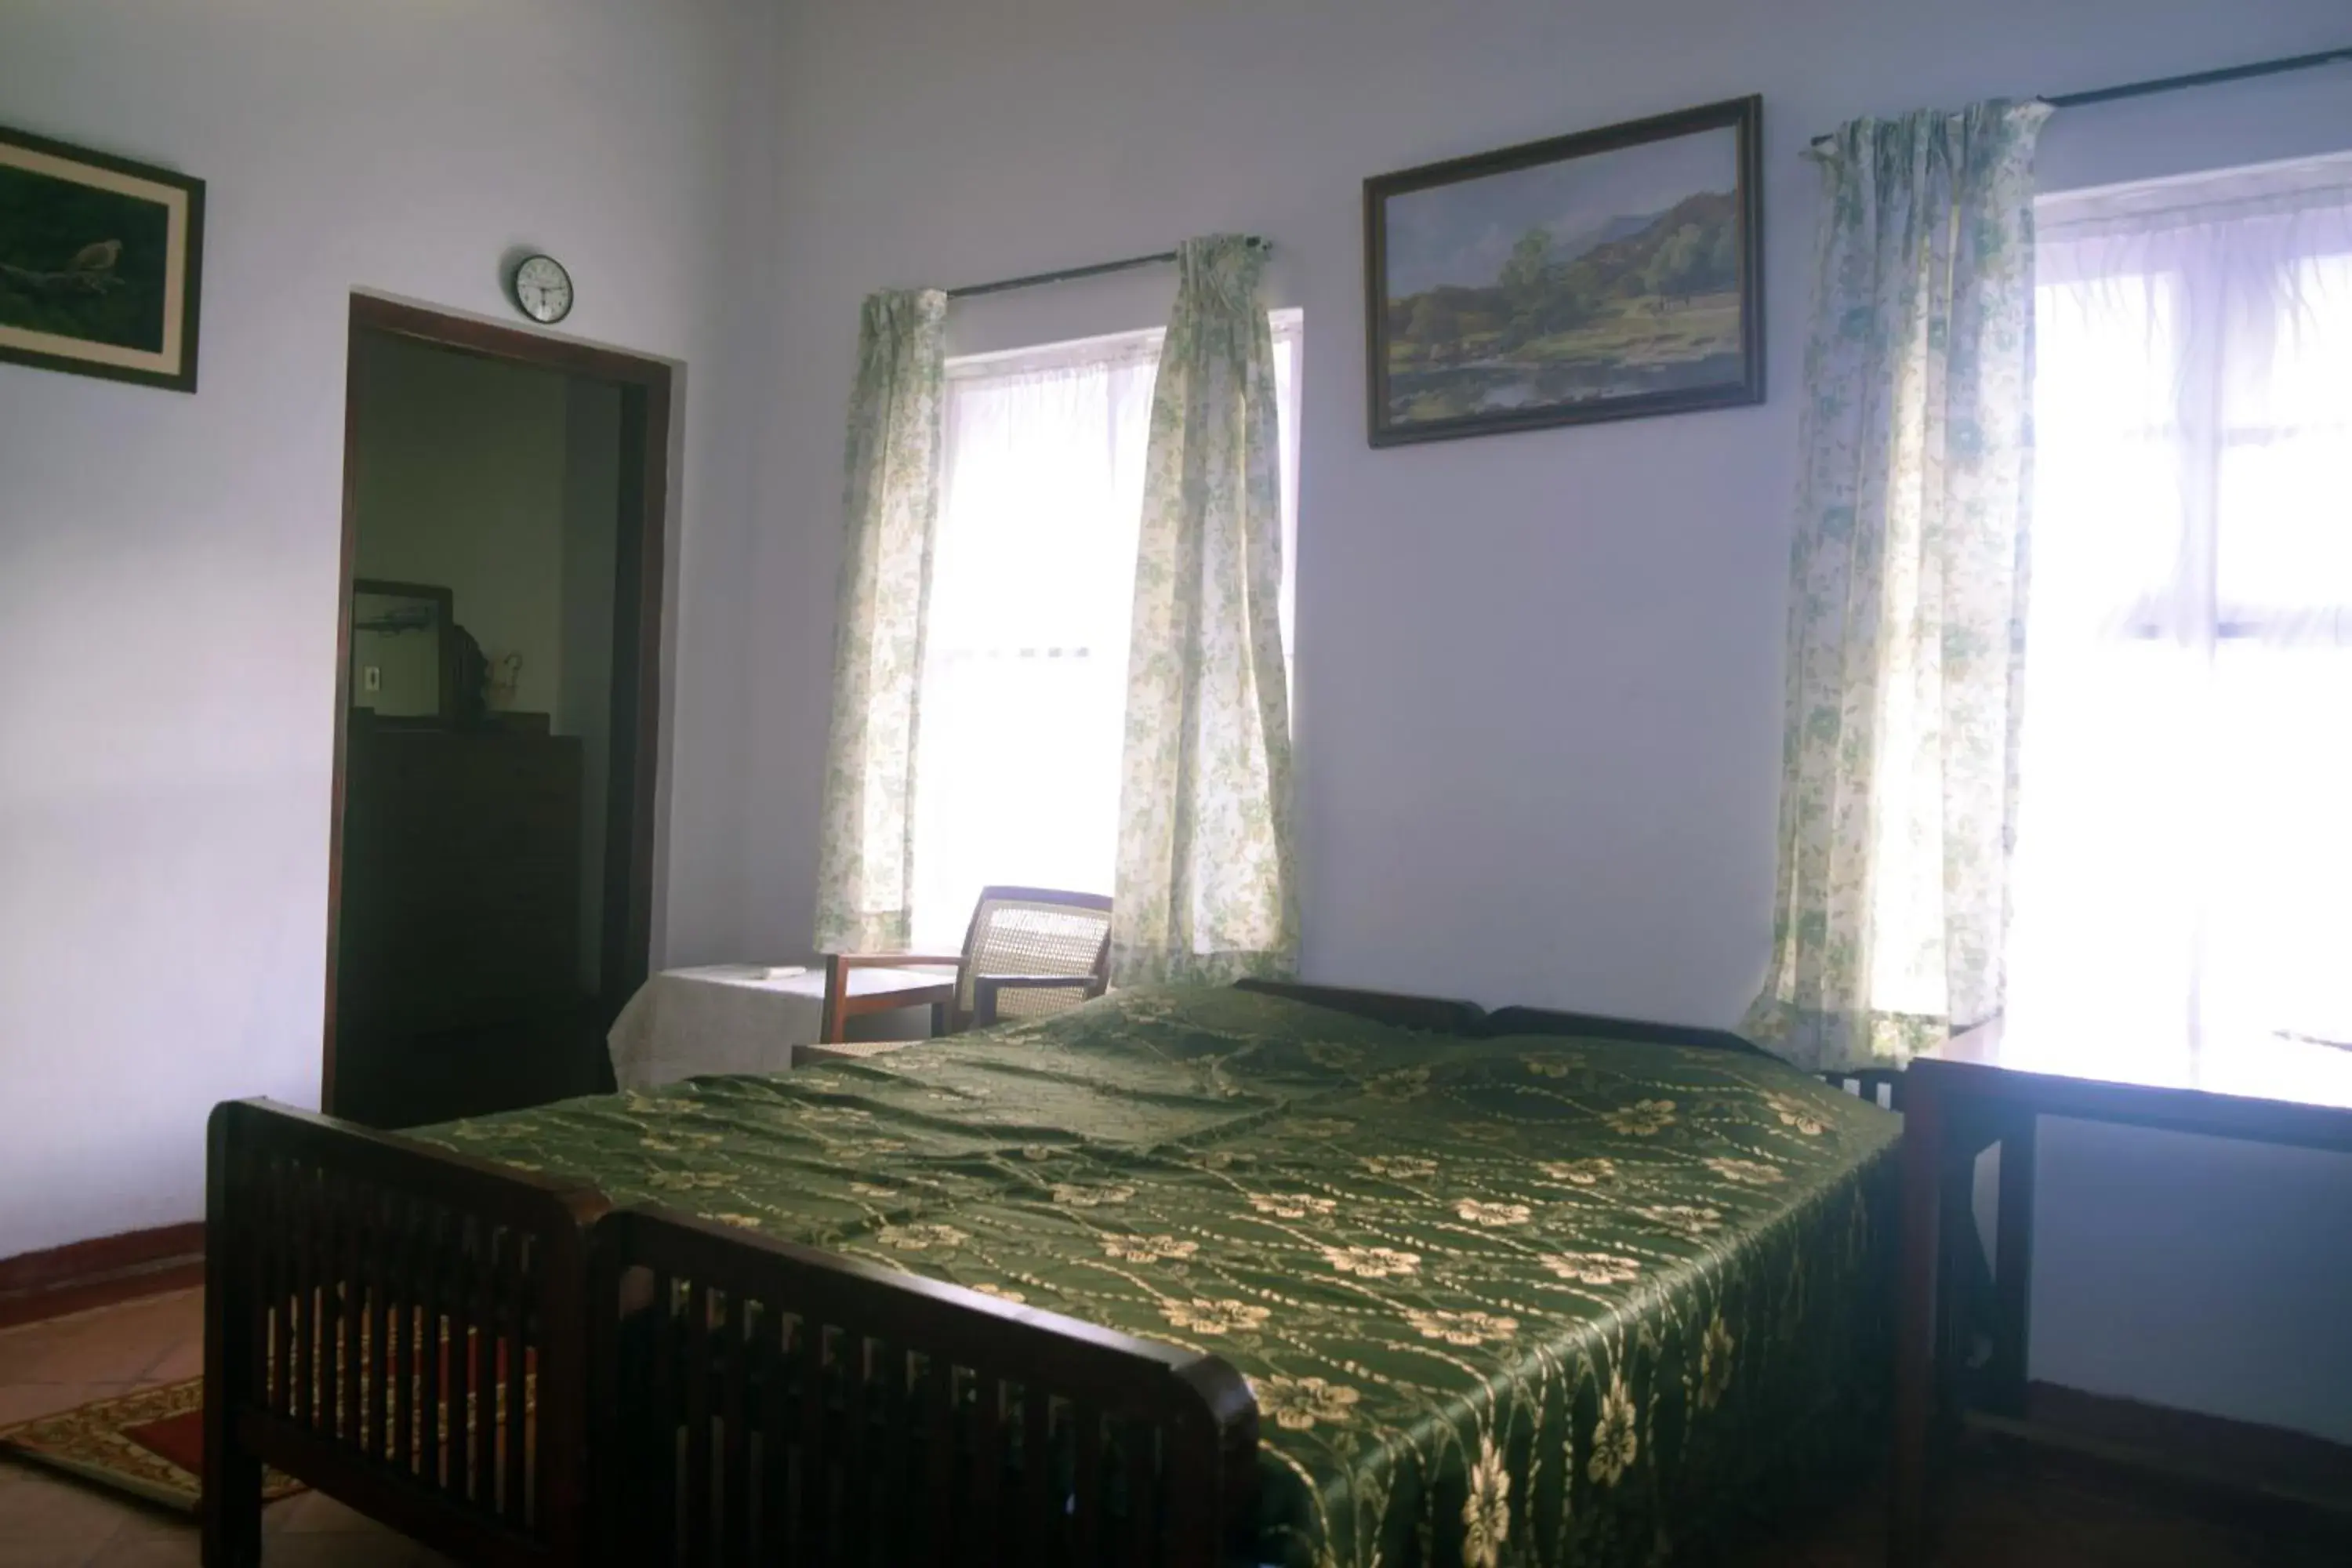 Bed in Fenn Hall